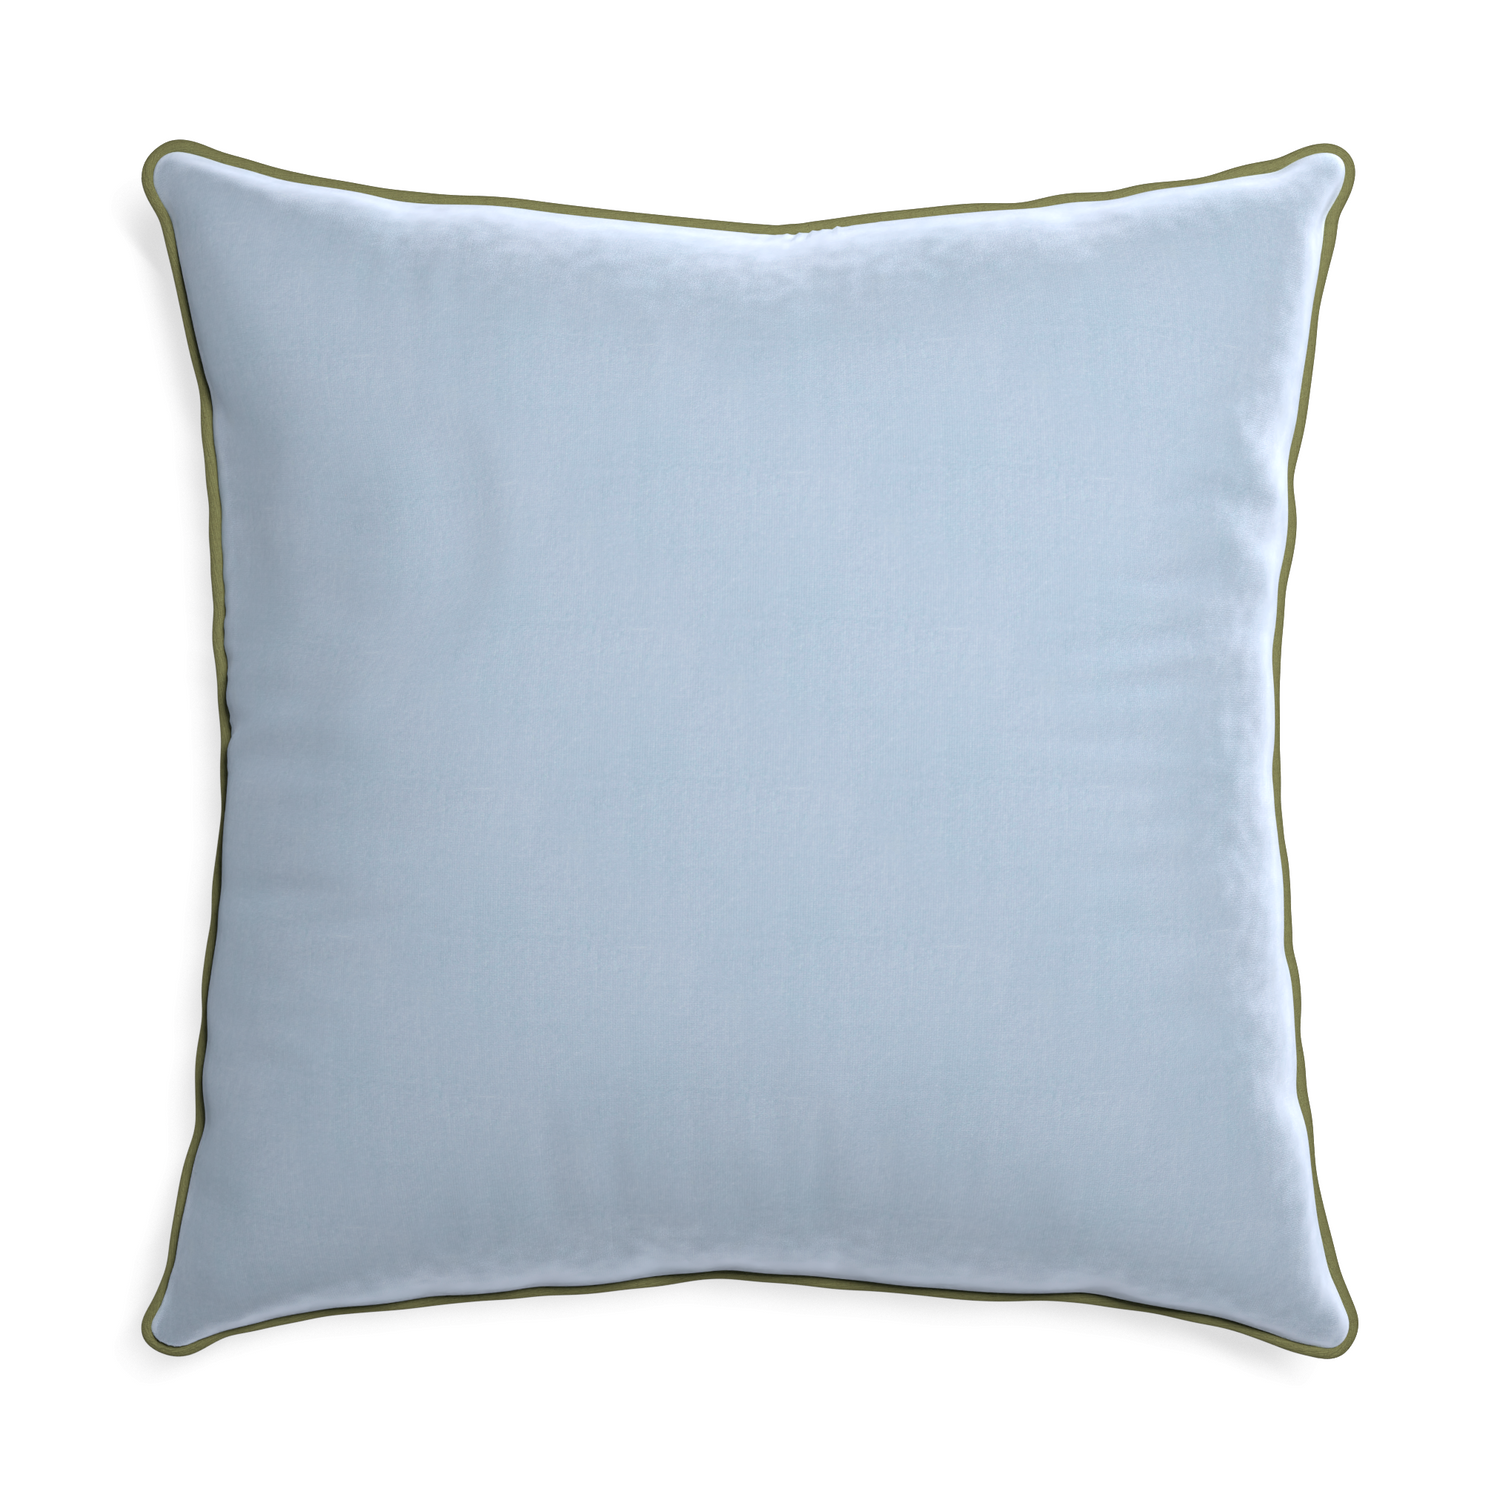 Euro-sham sky velvet custom pillow with moss piping on white background